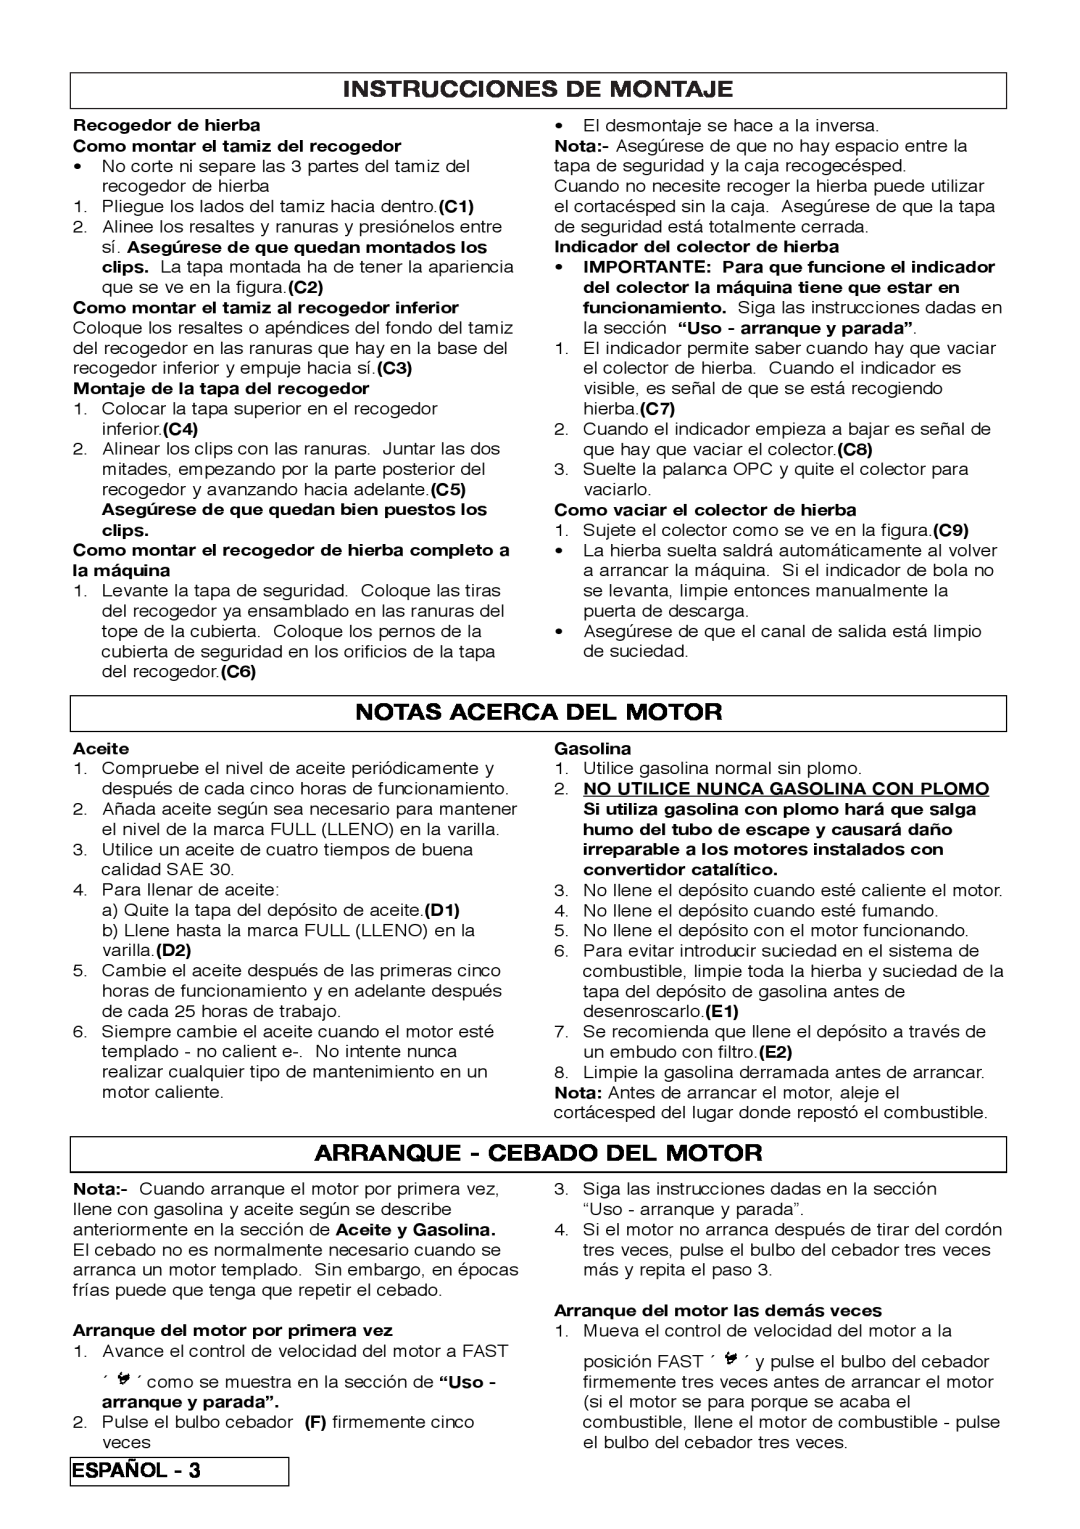 Husqvarna R 43SE manual Instrucciones De Montaje, Notas Acerca Del Motor, Arranque - Cebado Del Motor 